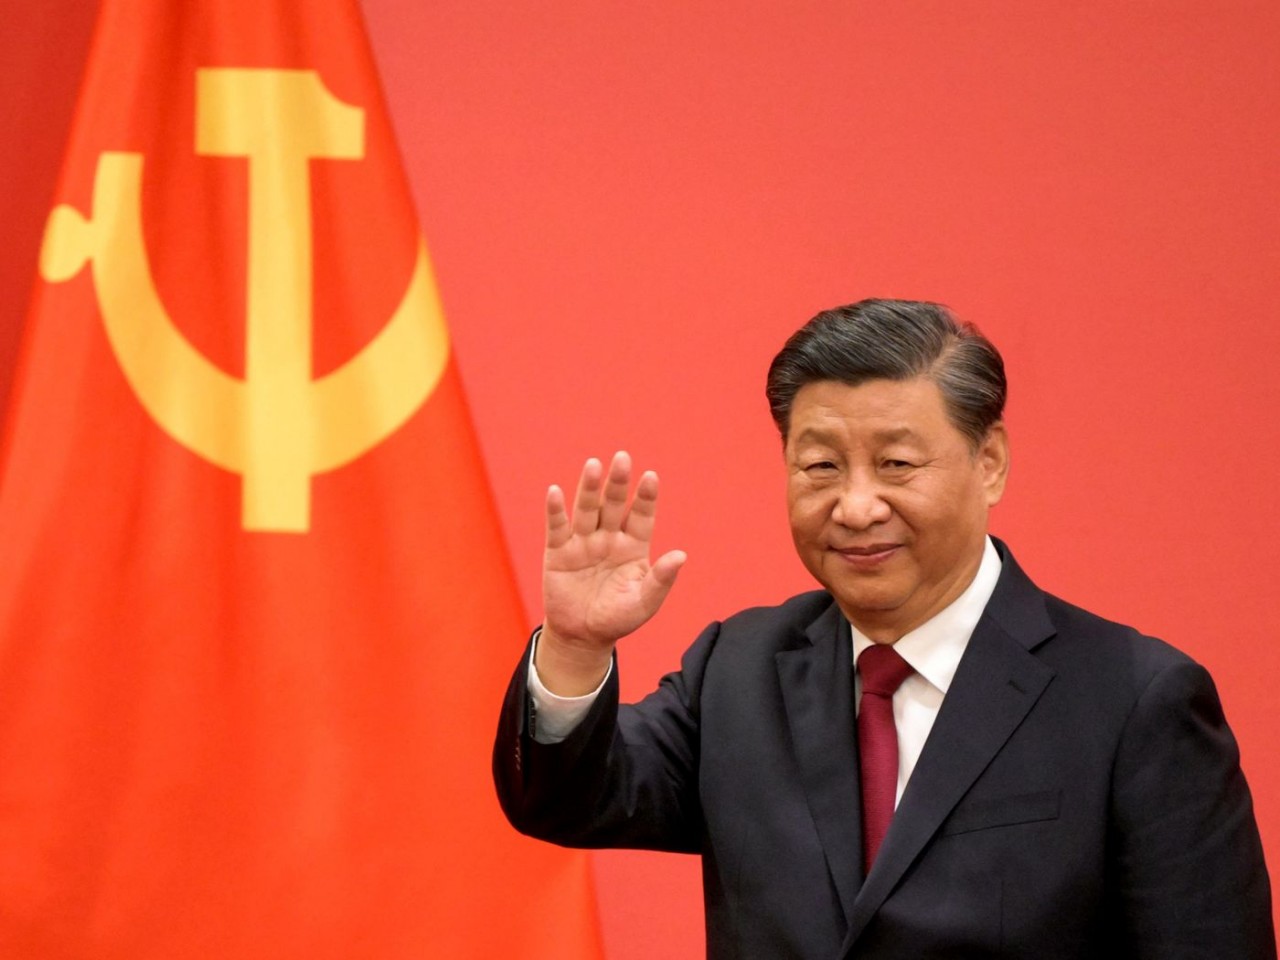 Chủ tịch Trung Quốc Tập Cận Bình chúc mừng Quốc khánh Australia, nói quan hệ song phương đang 'đi đúng hướng'